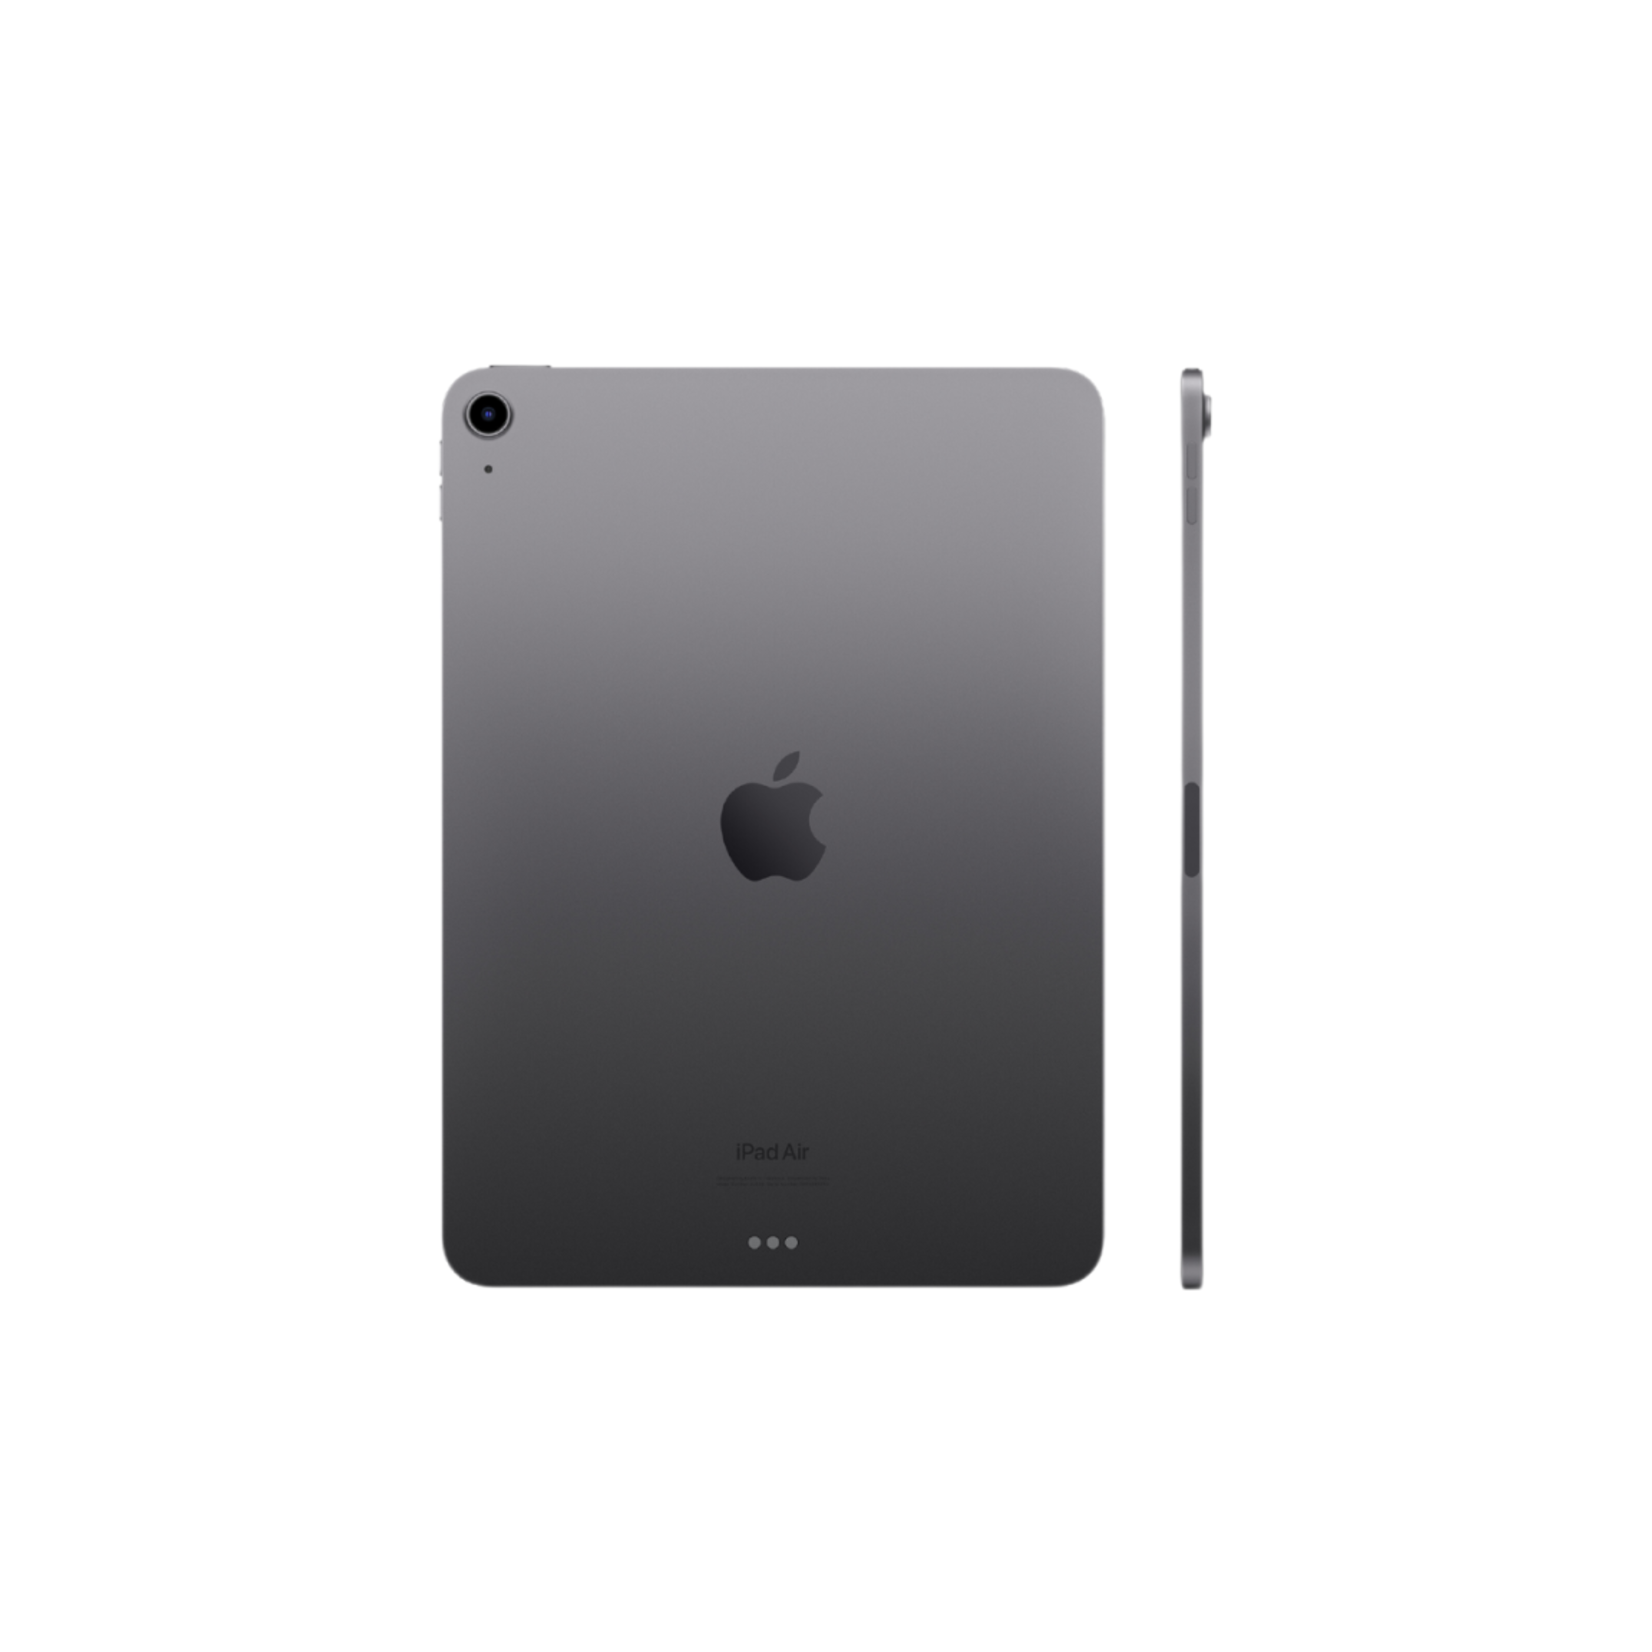 D&H 10.9-inch iPad Air - 64GB - Space Gray